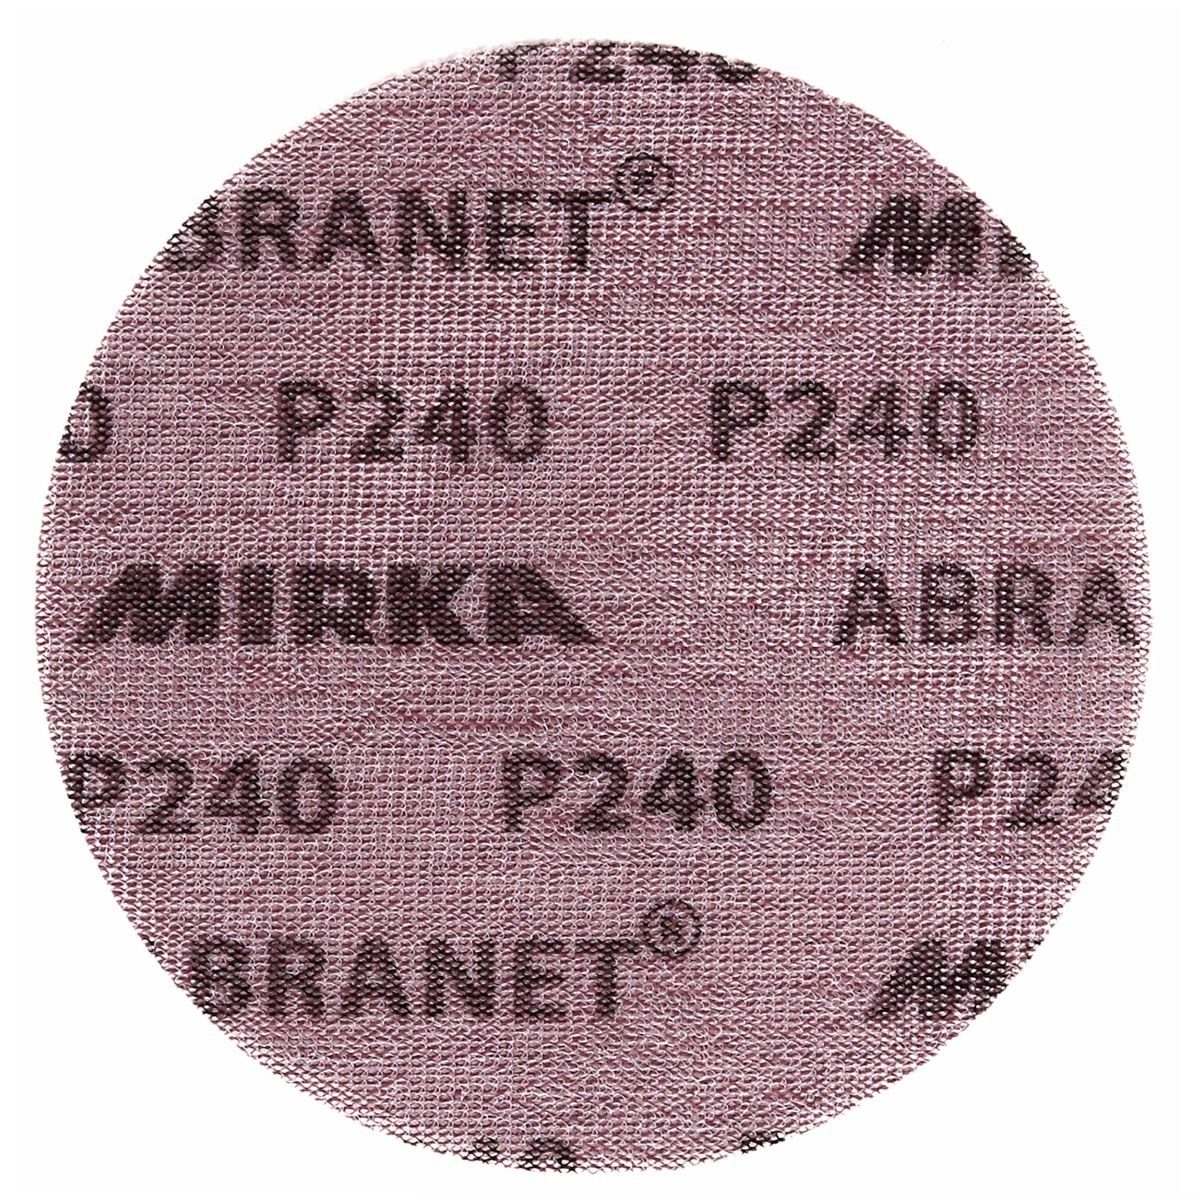 Mirka Schleifscheibe ABRANET Schleifscheiben 150mm P240 Grip (5424105025) 50 Stk